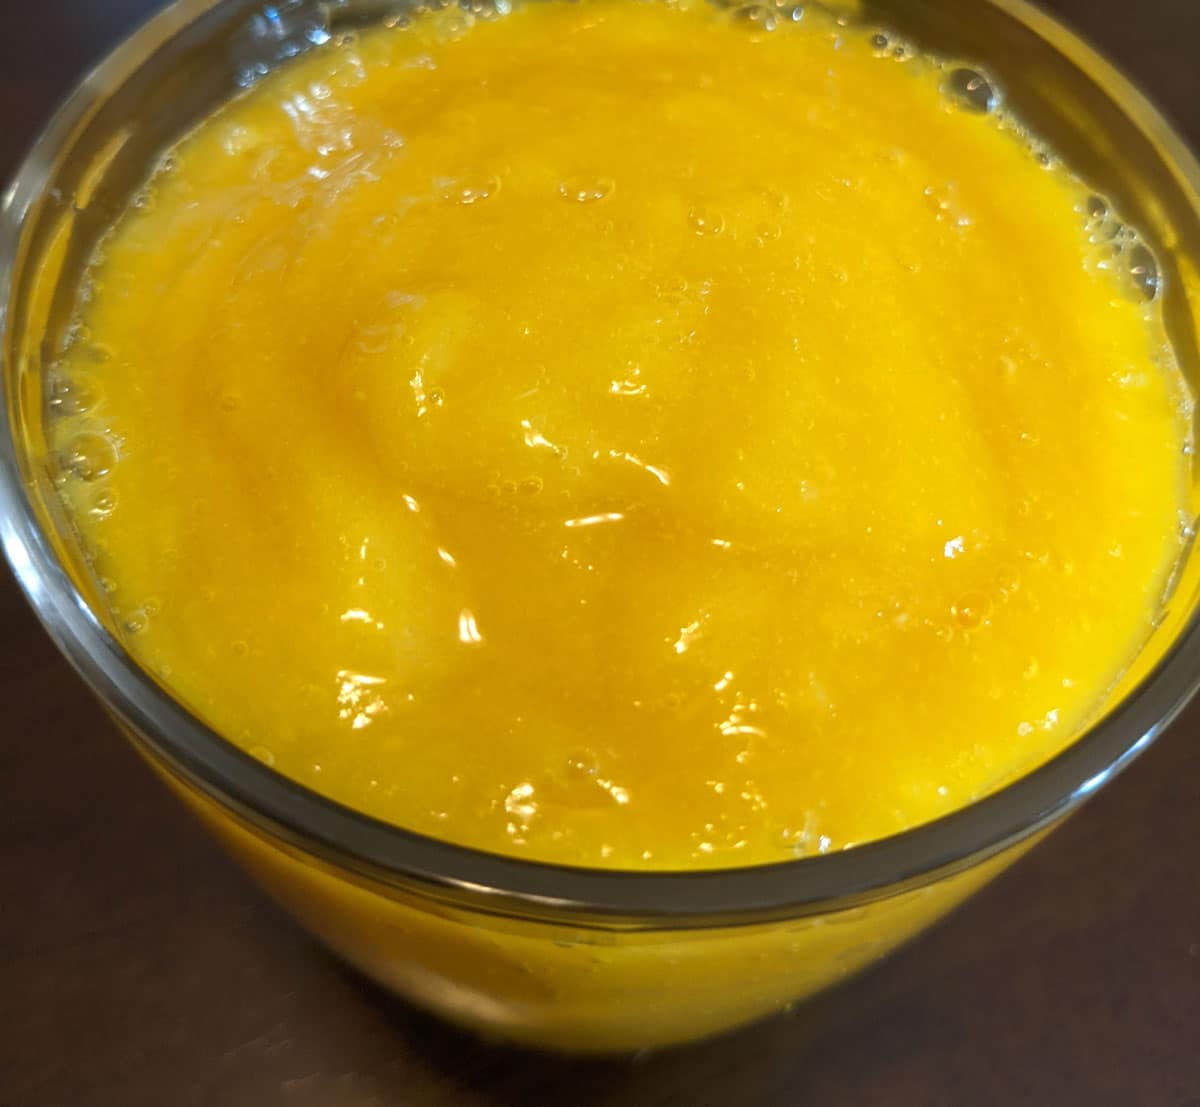 mango orange juice smoothie